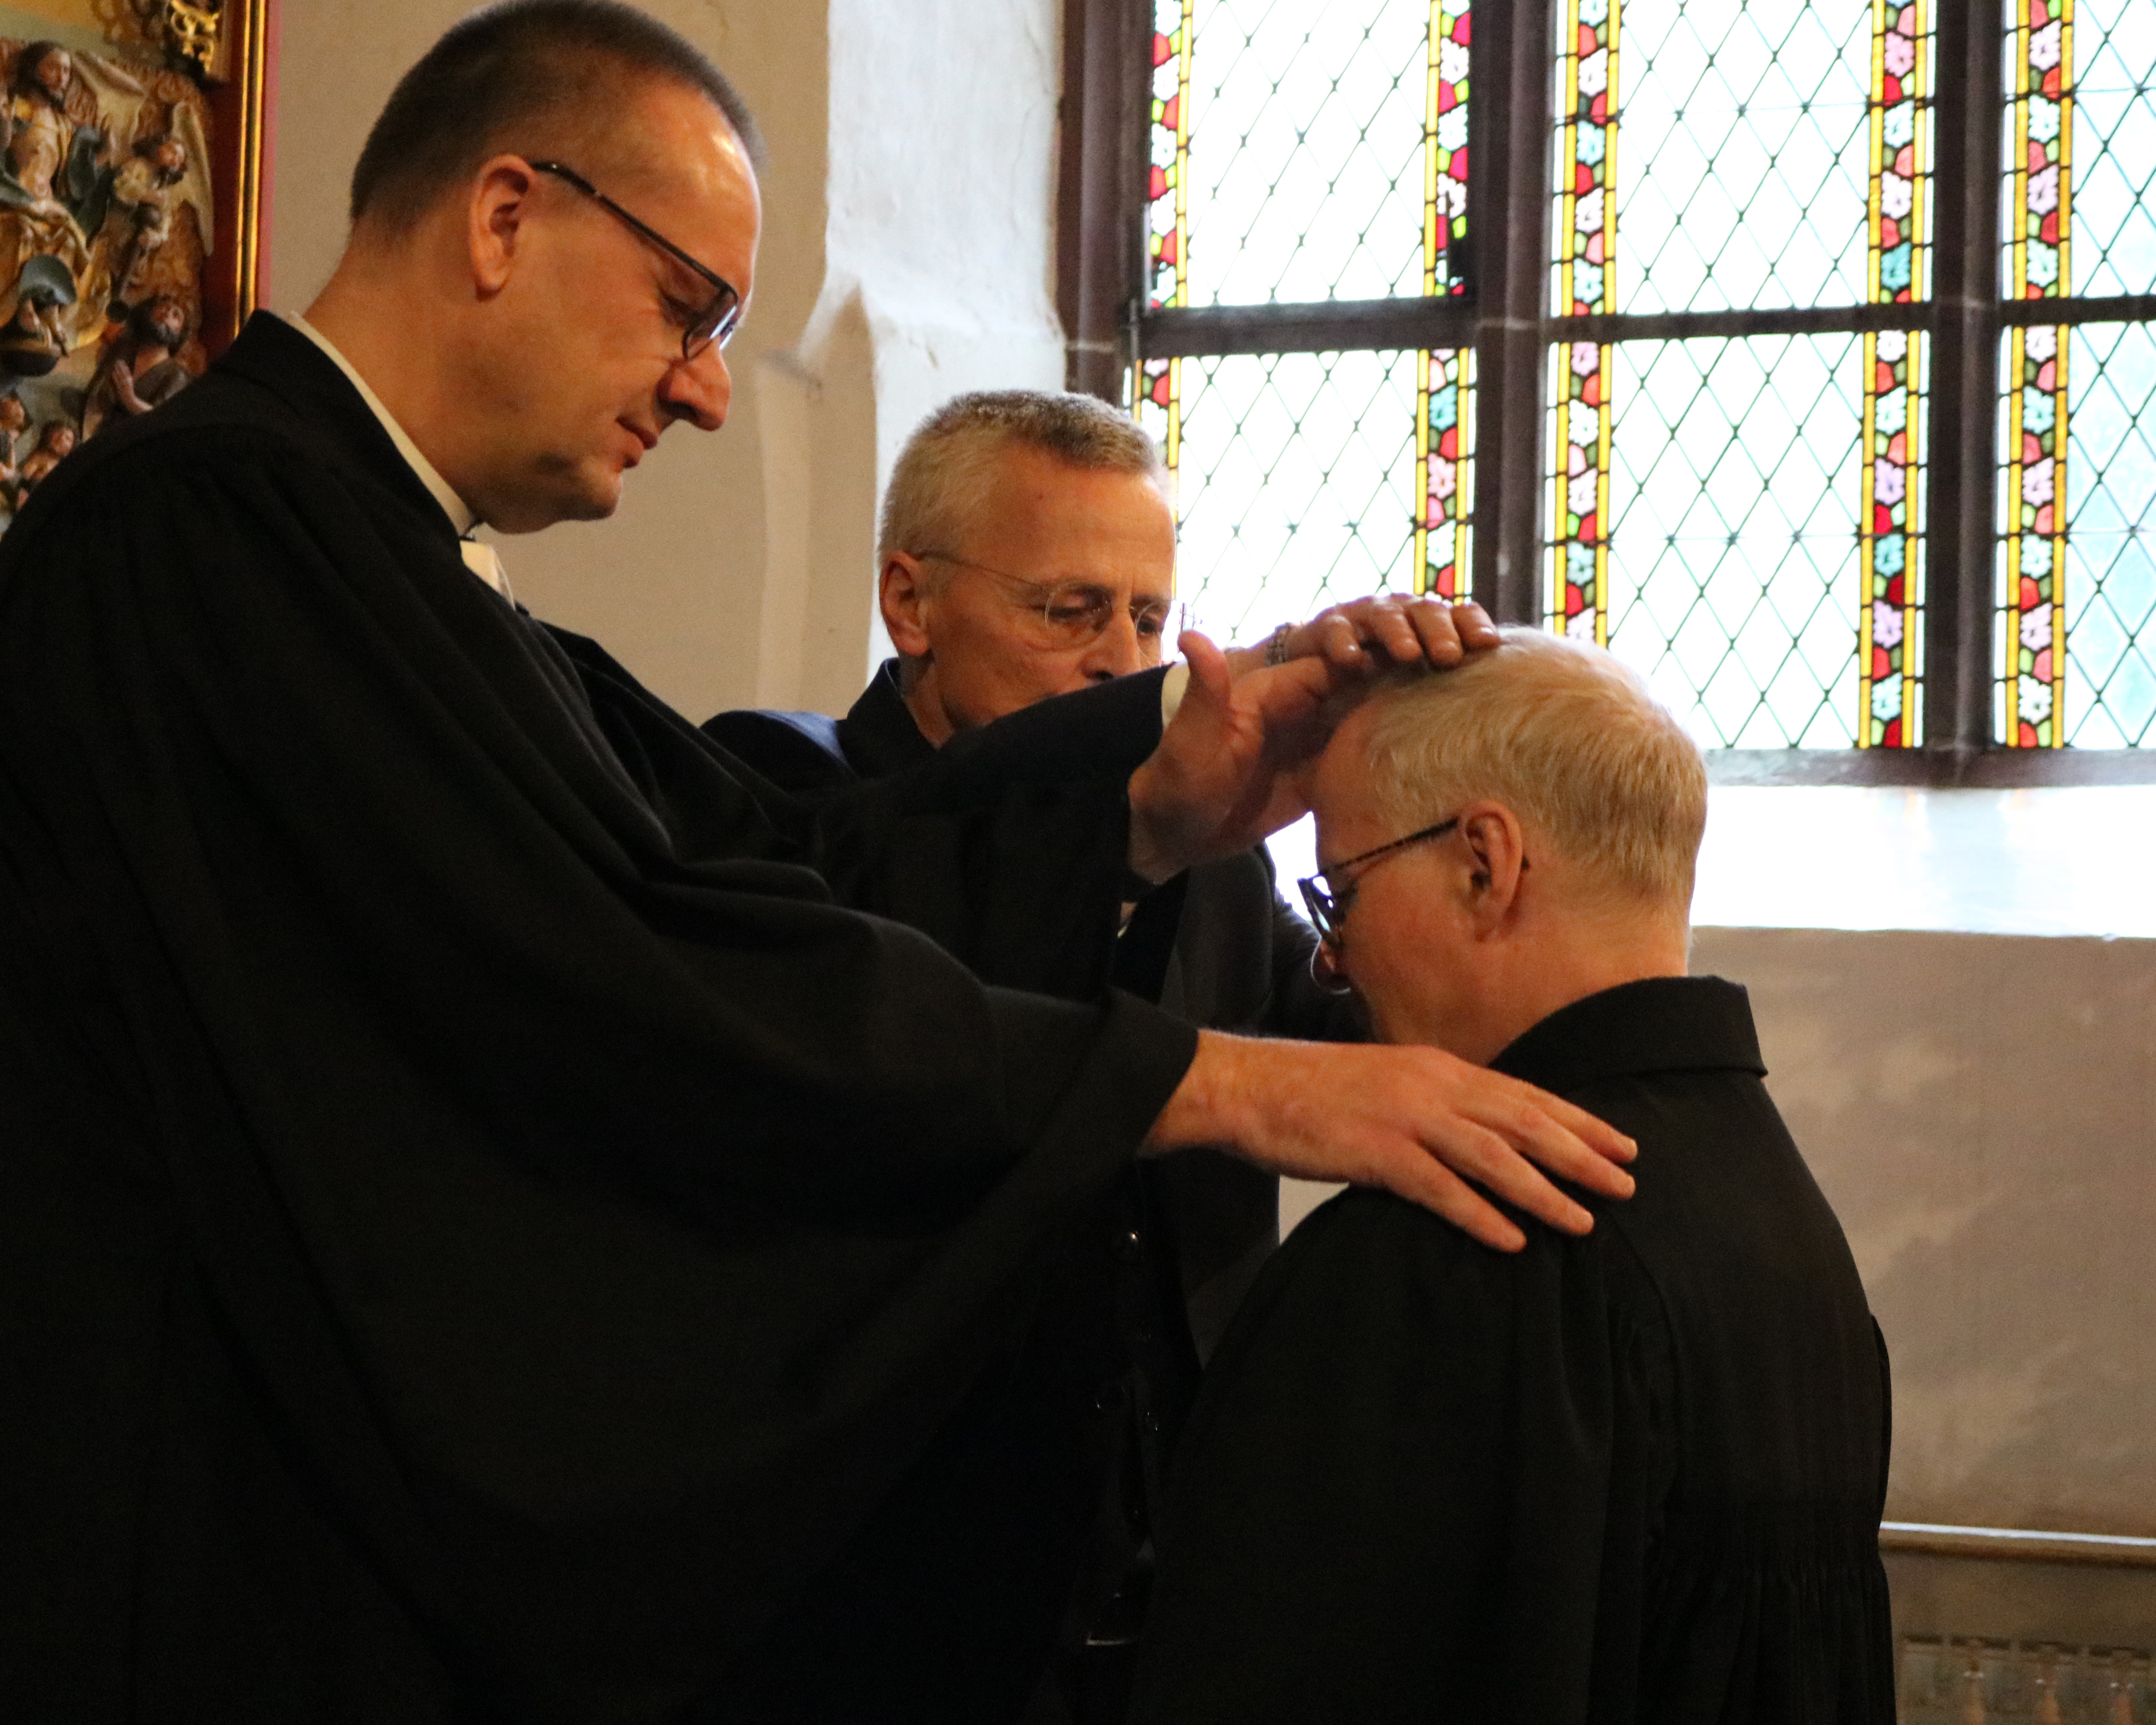 Bischof Adomeit und Uwe K. Kollmann segnen Pfarrer Thomas Feldim Entpflichtungsgottesdienst. Foto: Kerstin Kempermann